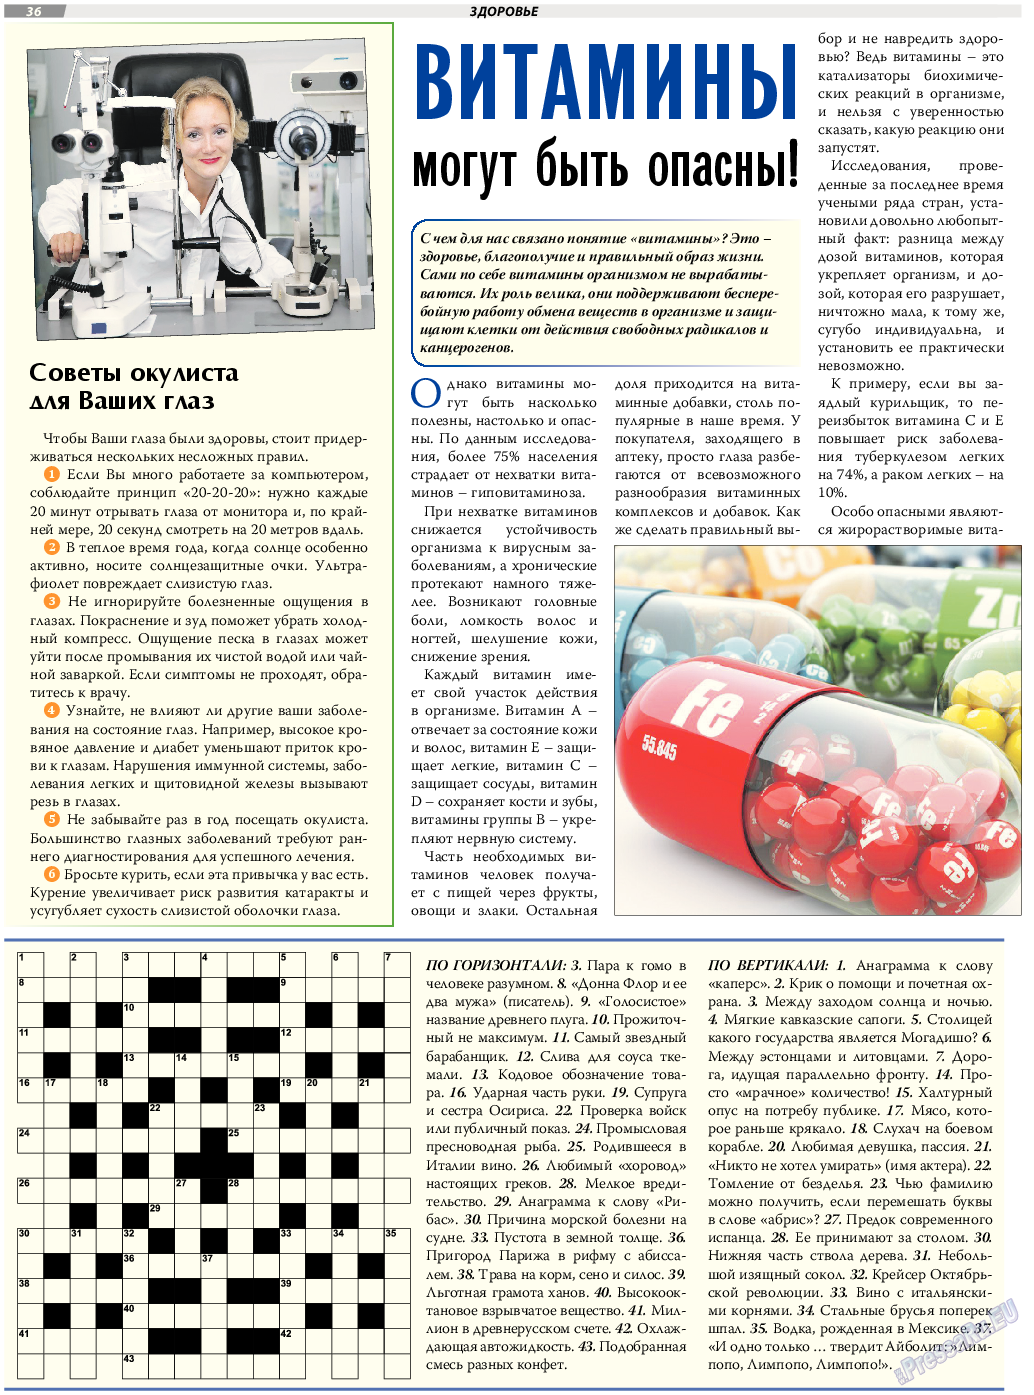 TVrus (газета). 2017 год, номер 18, стр. 36